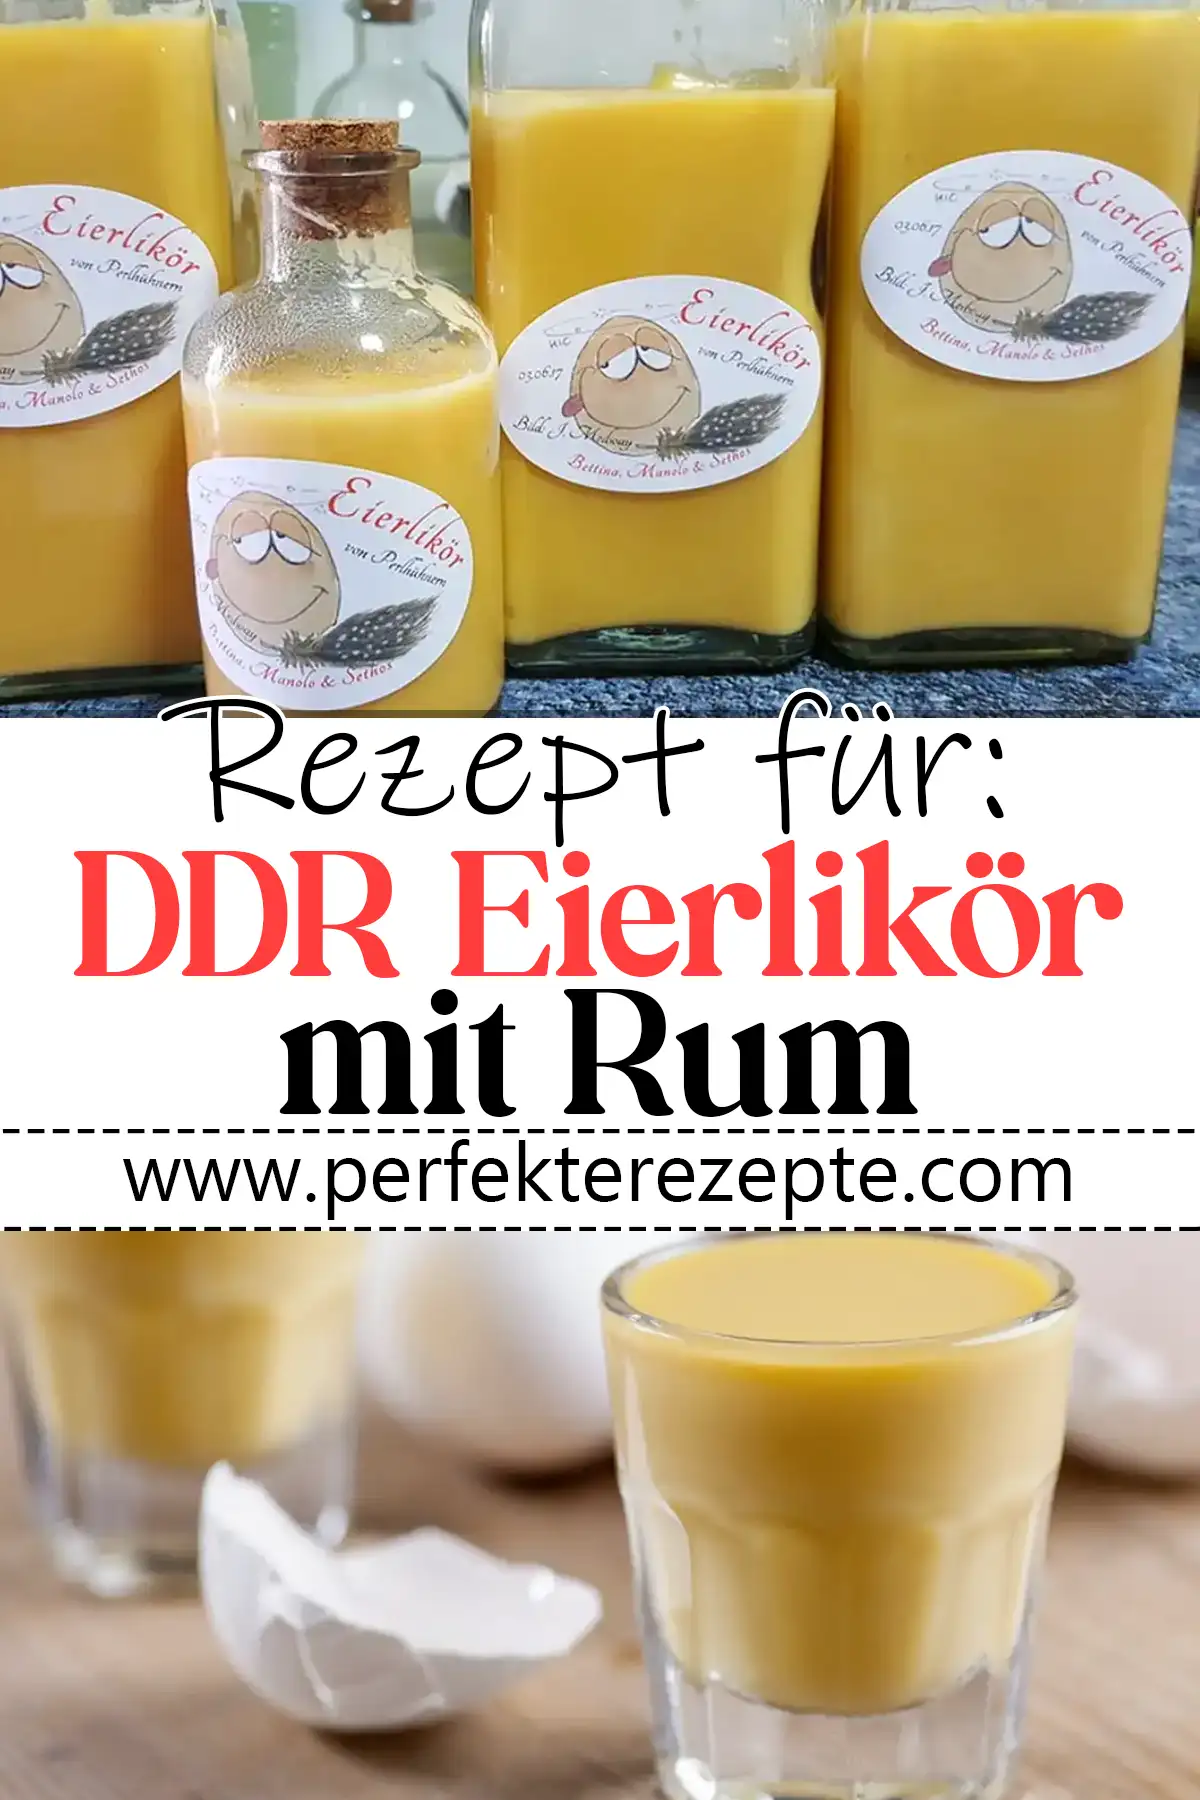 DDR Eierlikör mit Rum Rezept